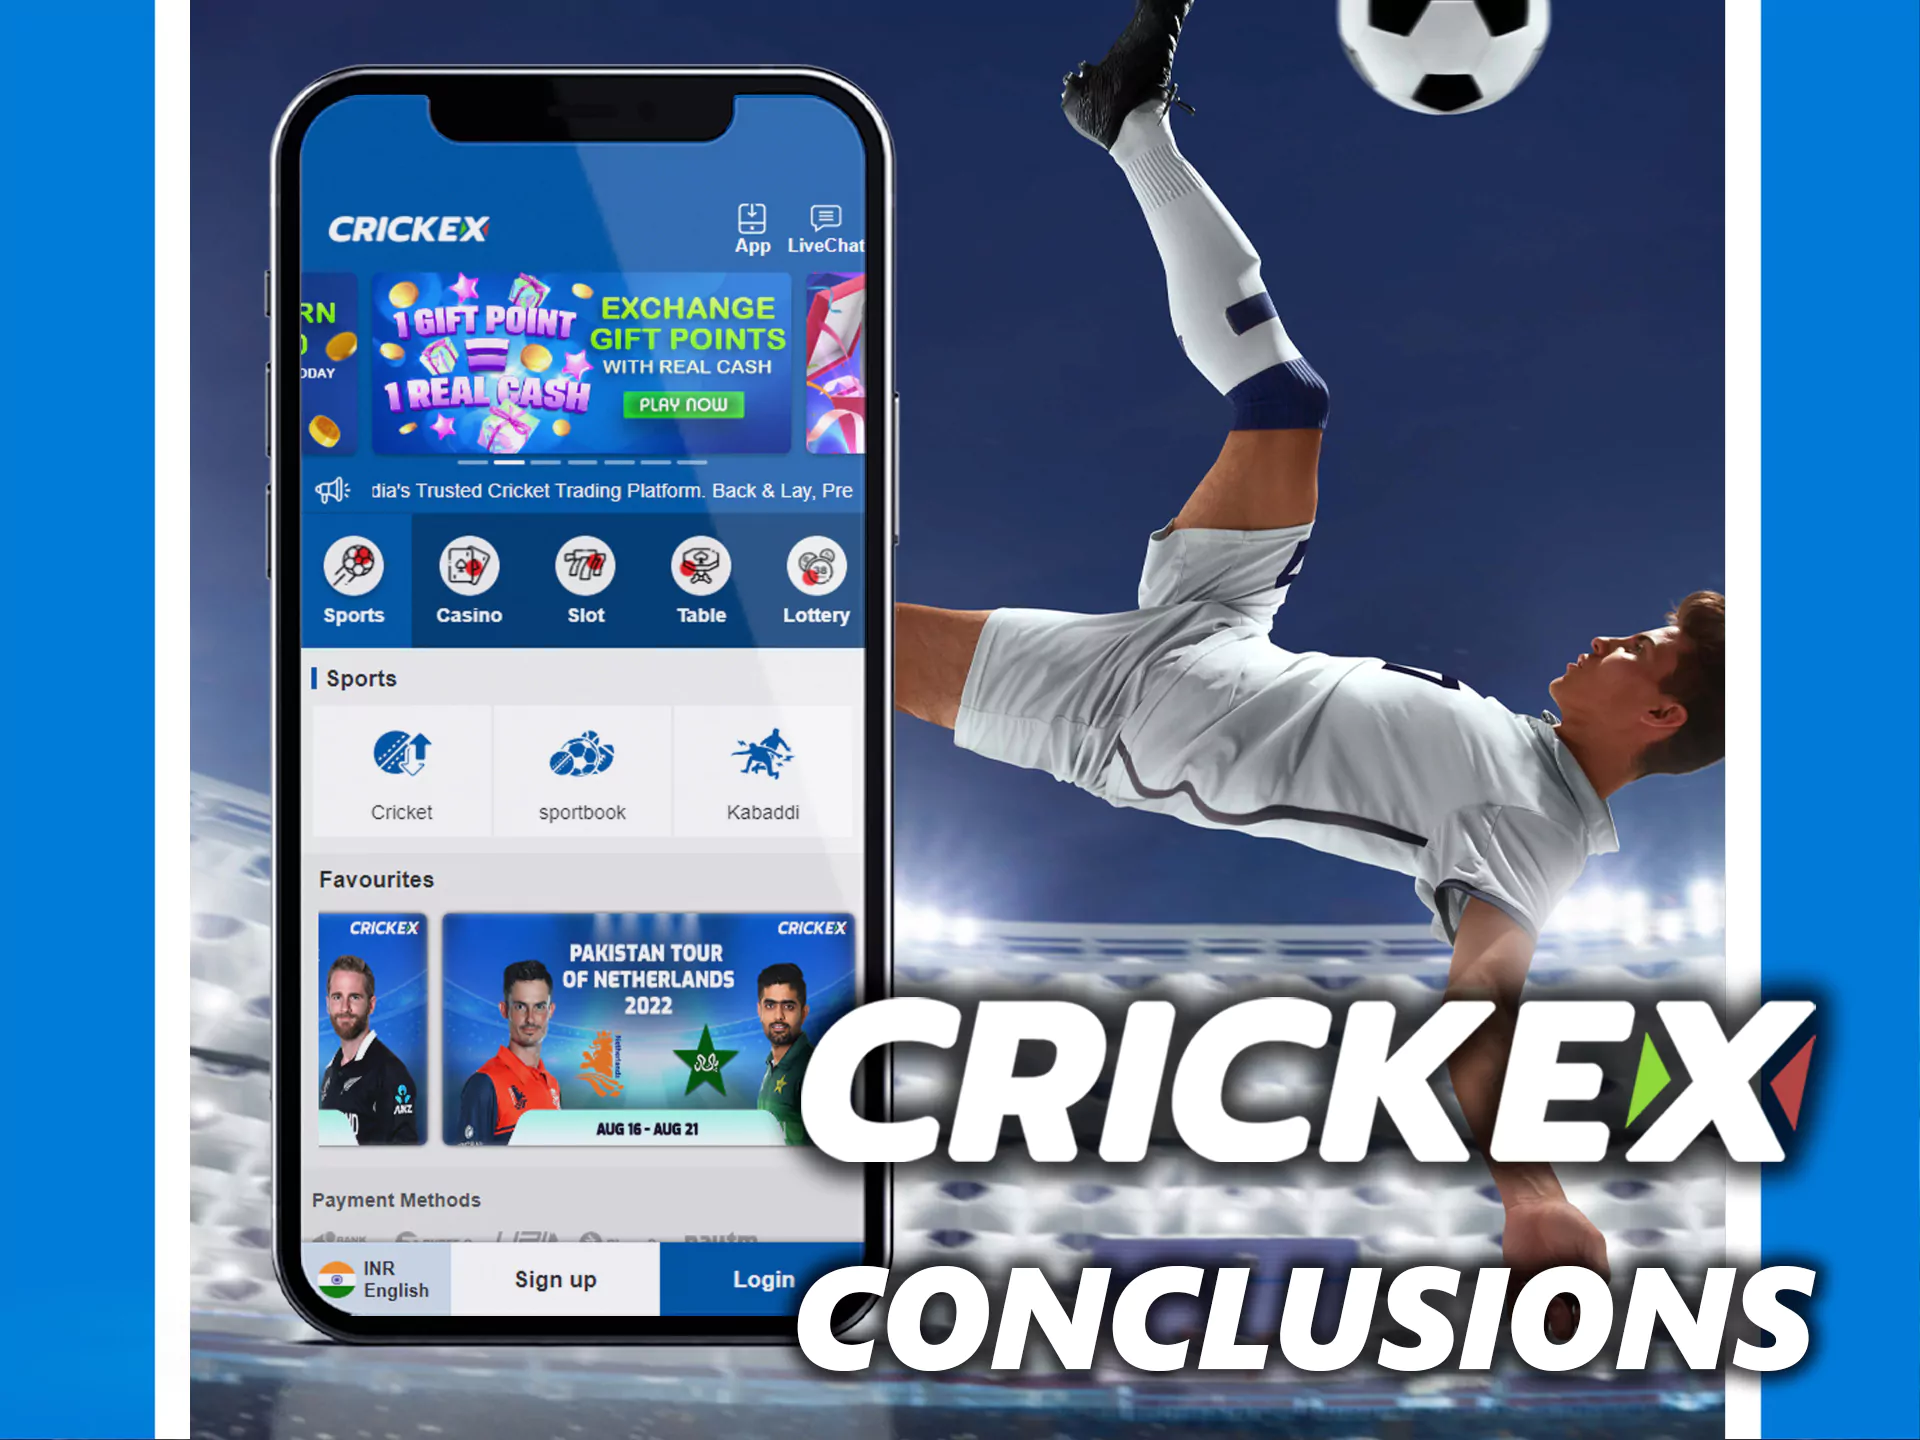 Crickex ऐप ऑनलाइन स्पोर्ट्स बेटिंग के लिए बहुत अच्छा है।